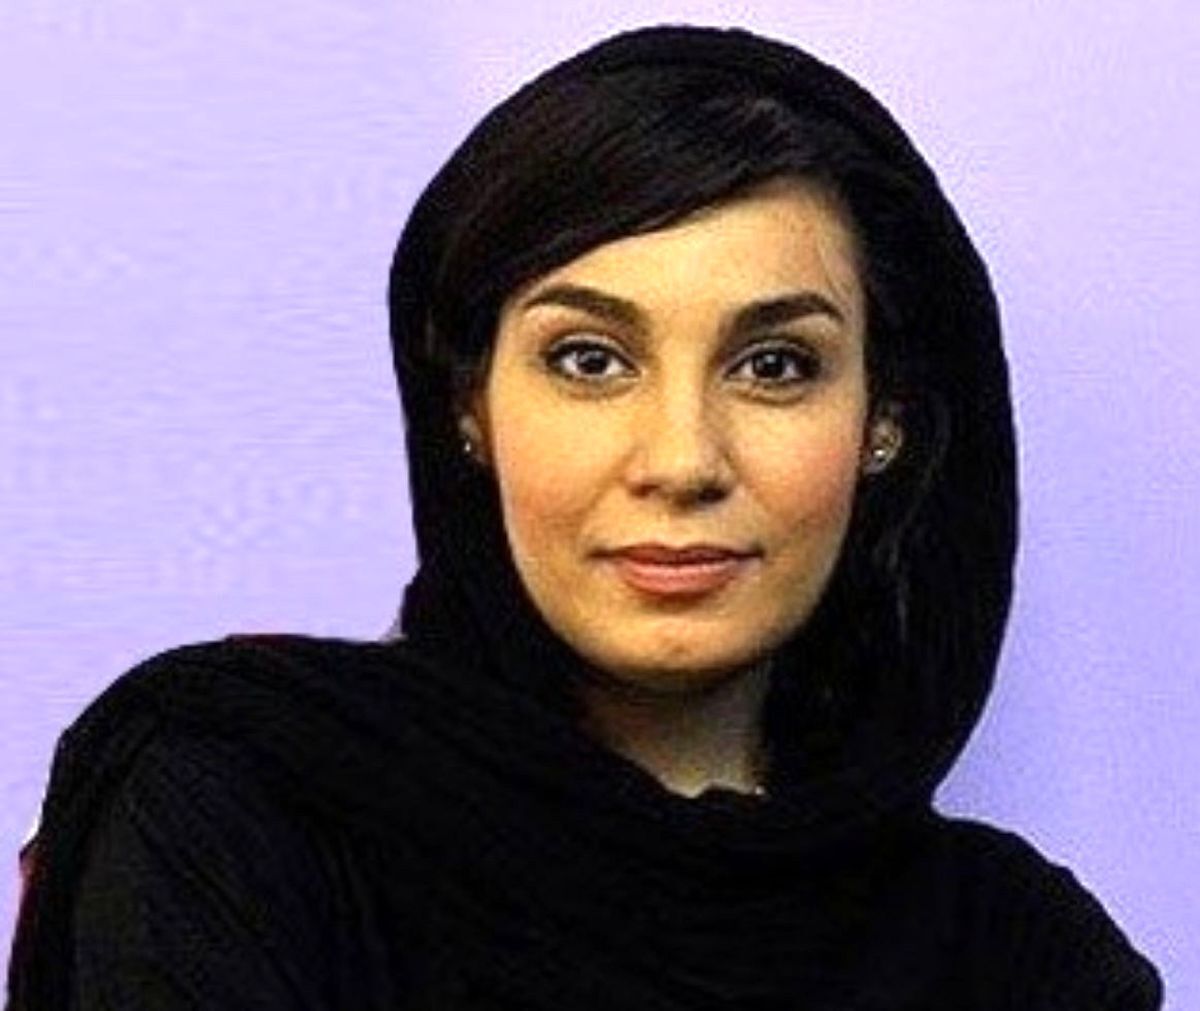 کارگردان زن ایرانی آزاد شد